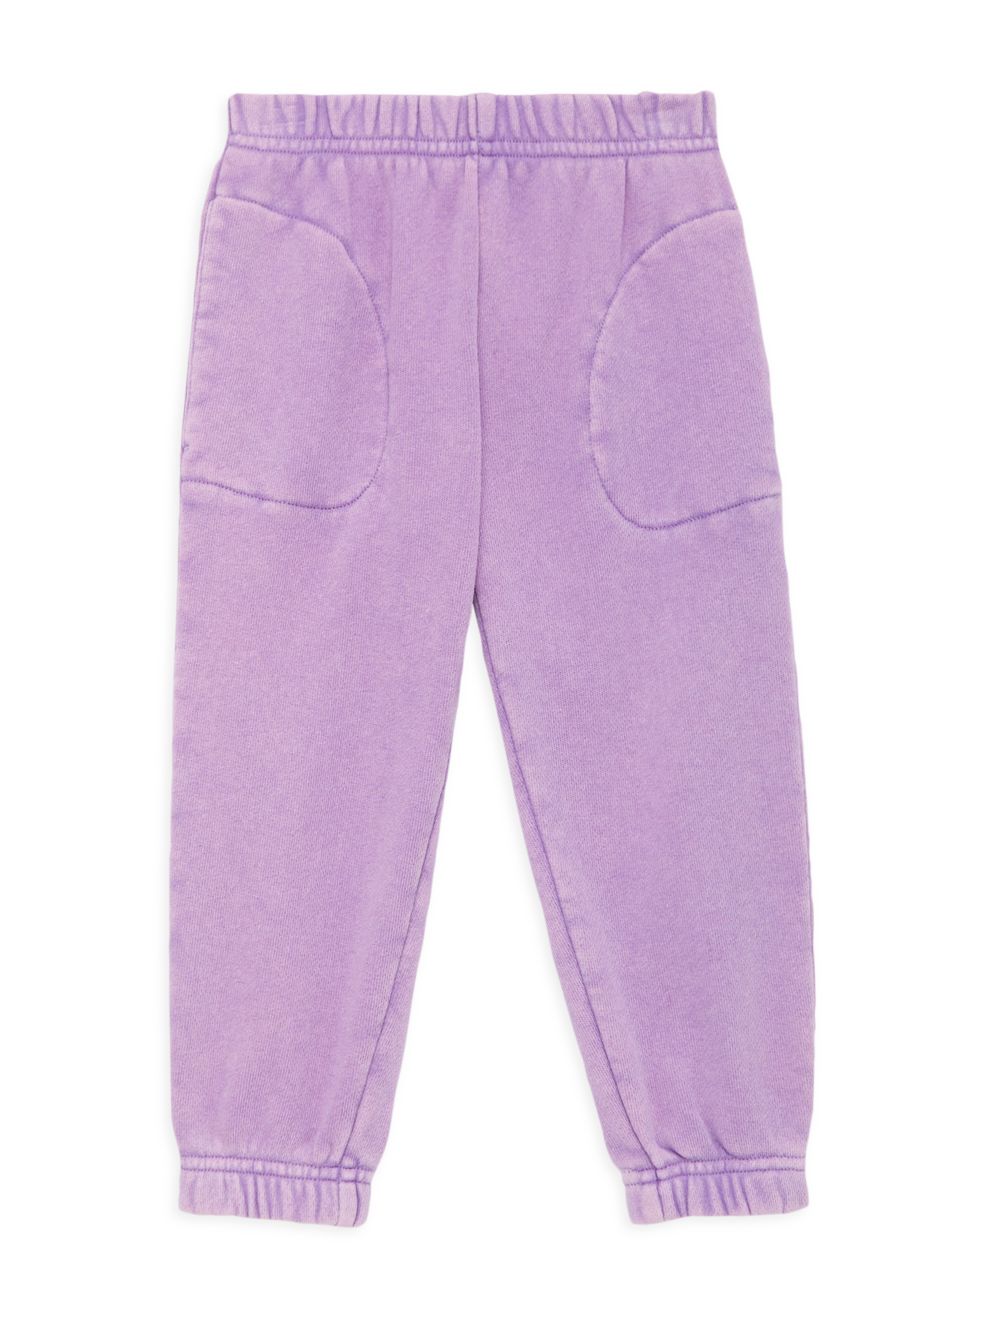 Классические хлопковые брюки-джоггеры для маленьких девочек и девочек SOMETHING NAVY, фиолетовый